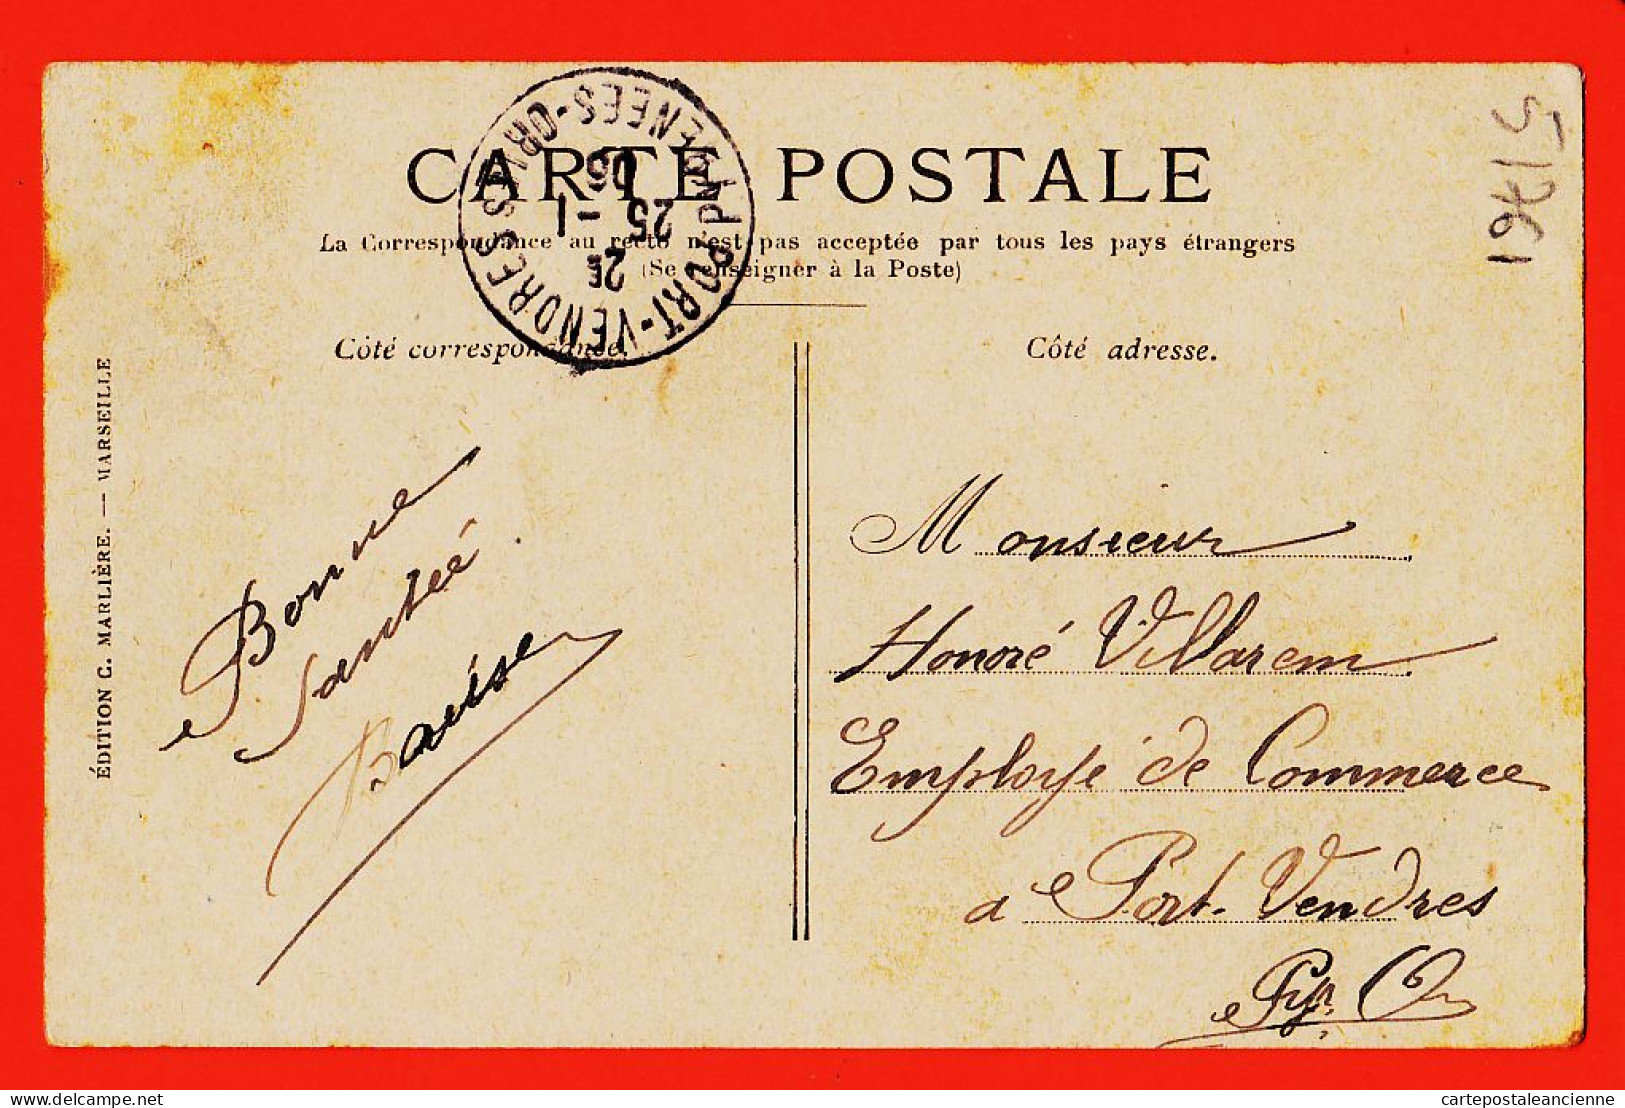 10761 ● MARSEILLE (13) Le Quai De La FRATERNITE  1905 à Honoré VILLAREM  Port-Vendres  MARLIERE N° 5 - Joliette, Hafenzone